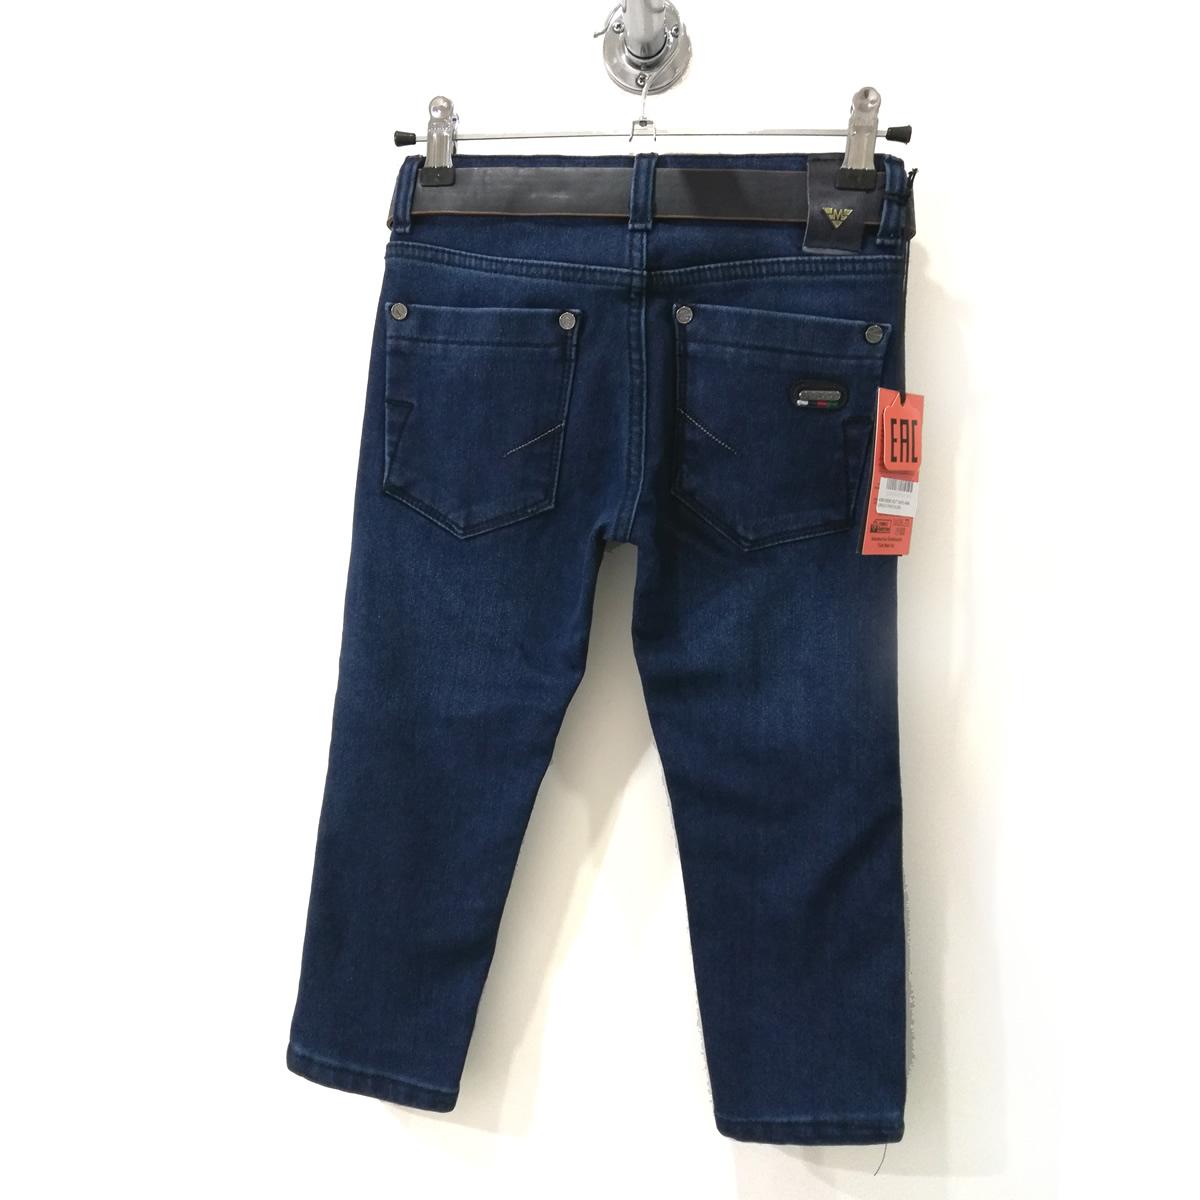 Дитячі утеплені джинси для хлопчика, темно-сині (4585), Musti